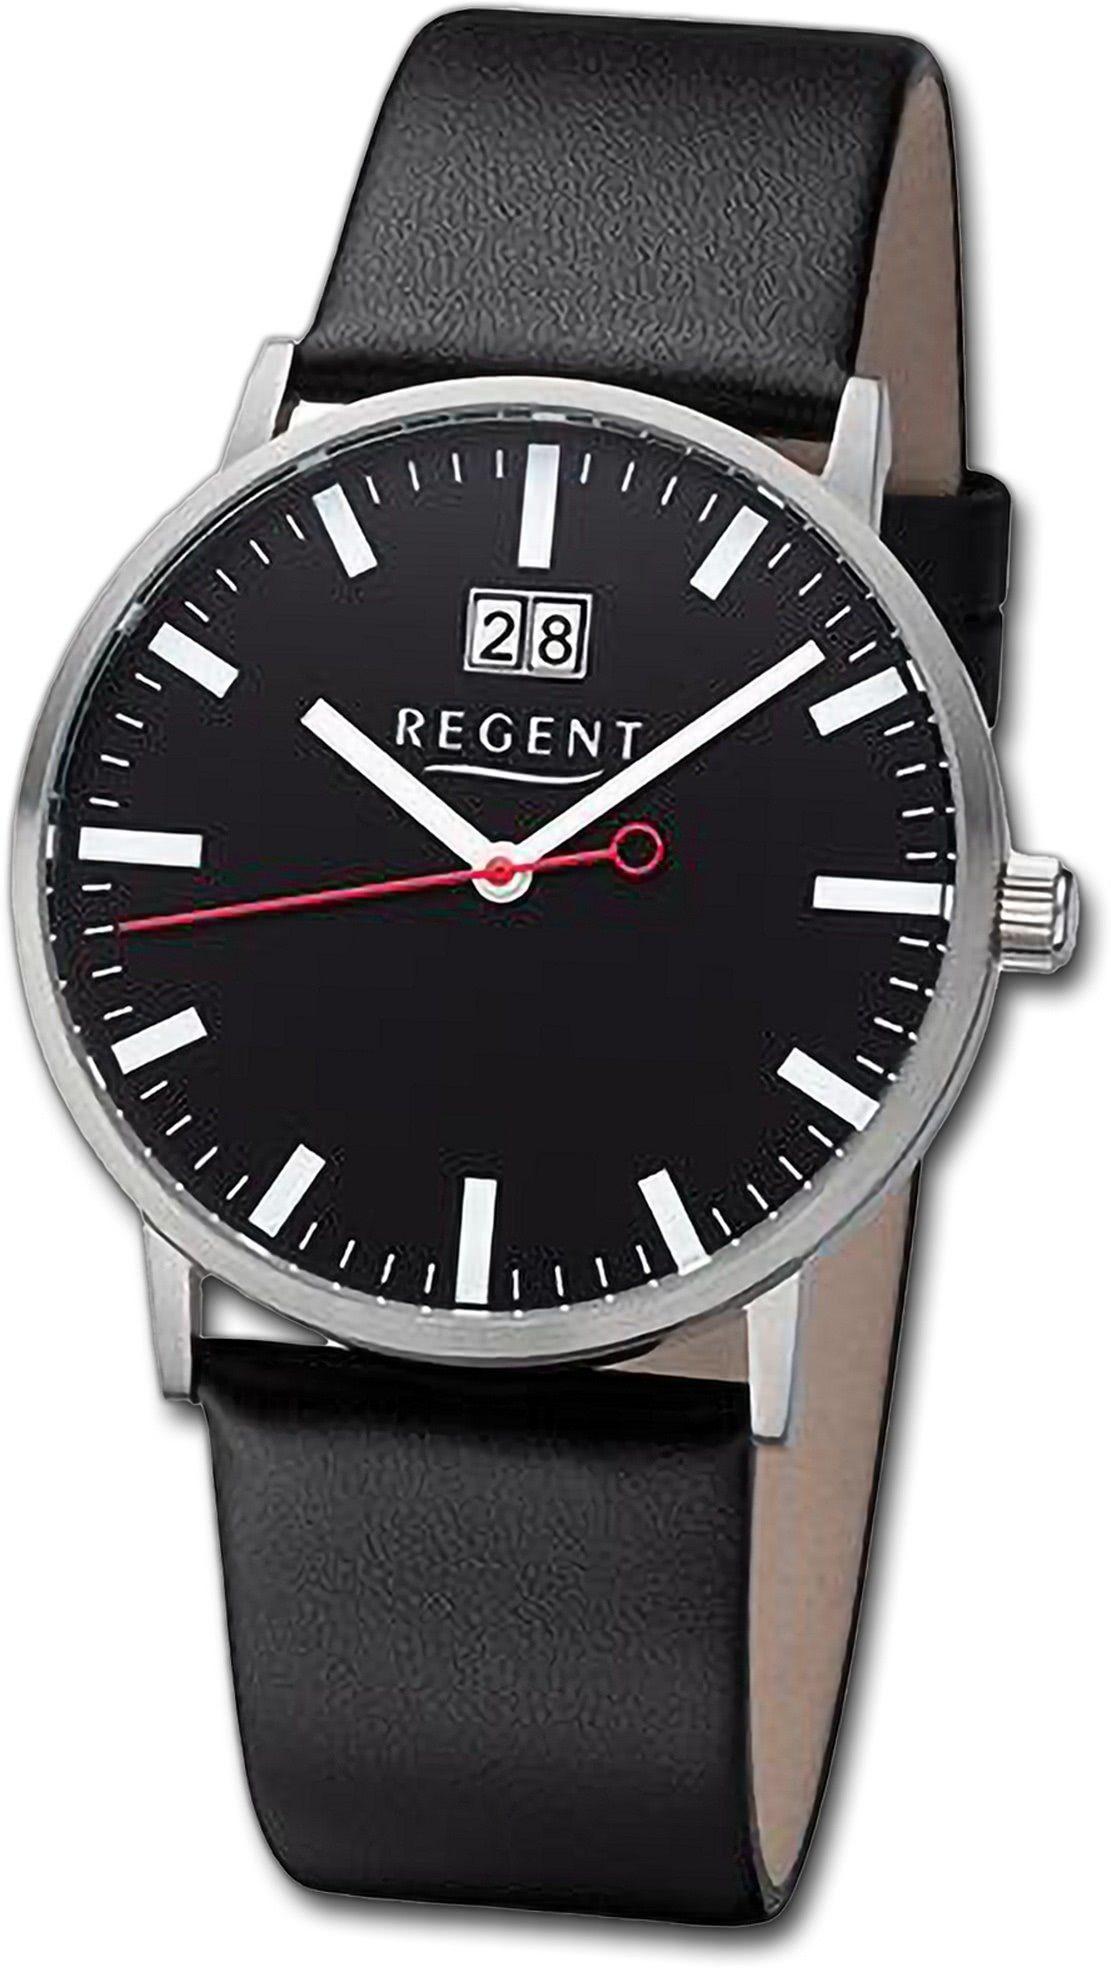 Neue Produkte diese Woche Regent Quarzuhr Regent Herren Gehäuse, Lederarmband rundes (ca. Herrenuhr groß extra 39mm) Armbanduhr Analog, schwarz